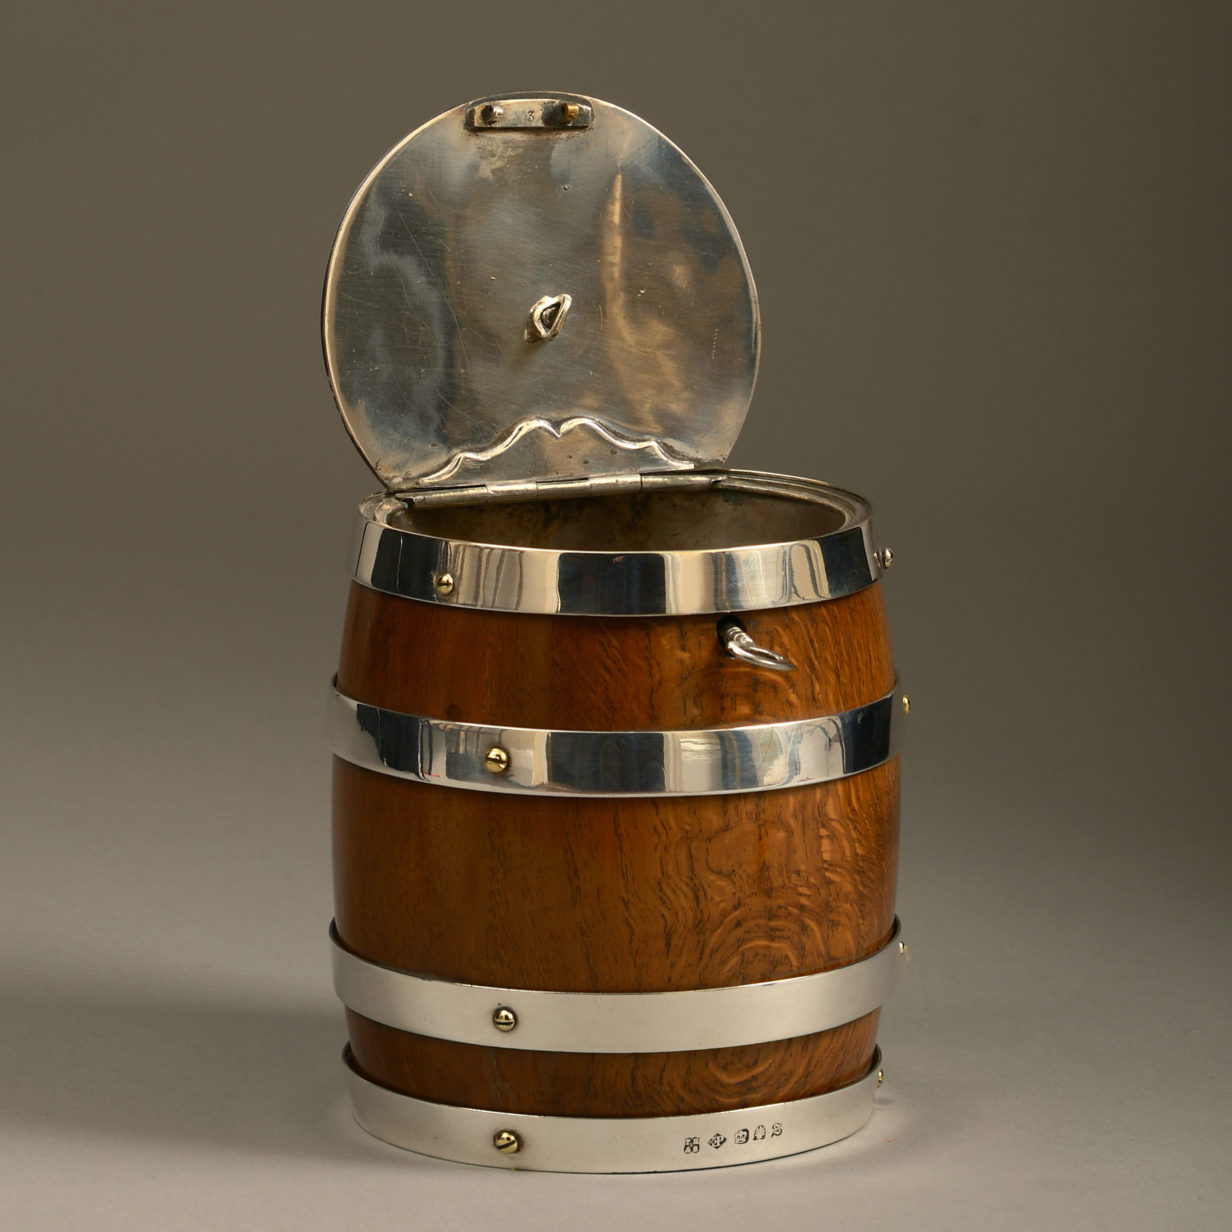 A 19th century oak and silvered barrel tobacco jar